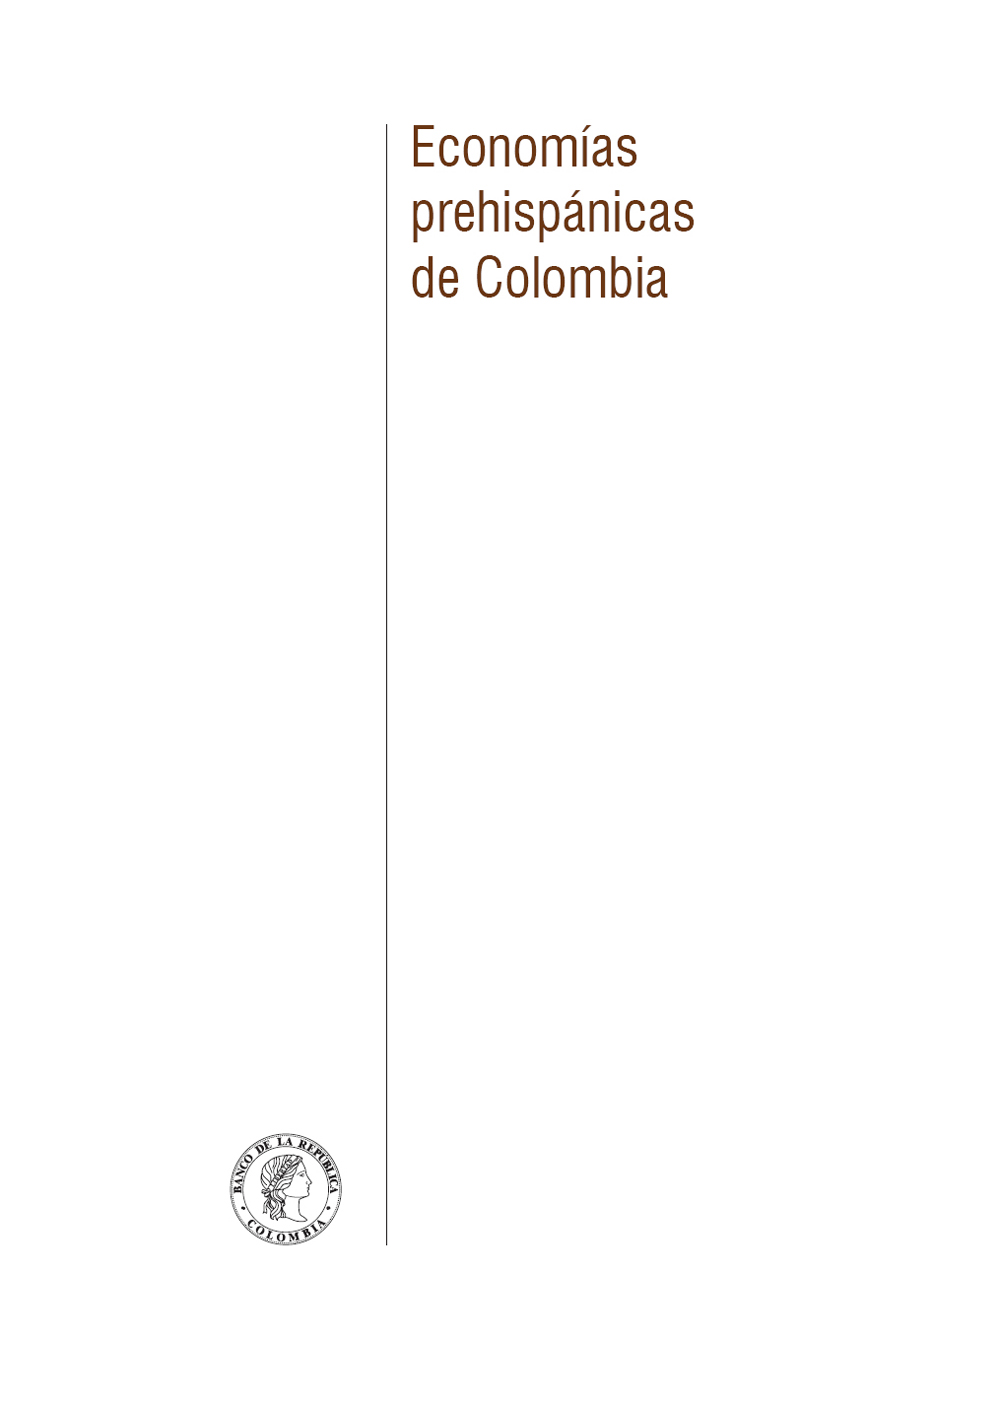 Economías prehispánicas de Colombia autores Alberto Gómez Gutiérrez Ignacio - photo 2